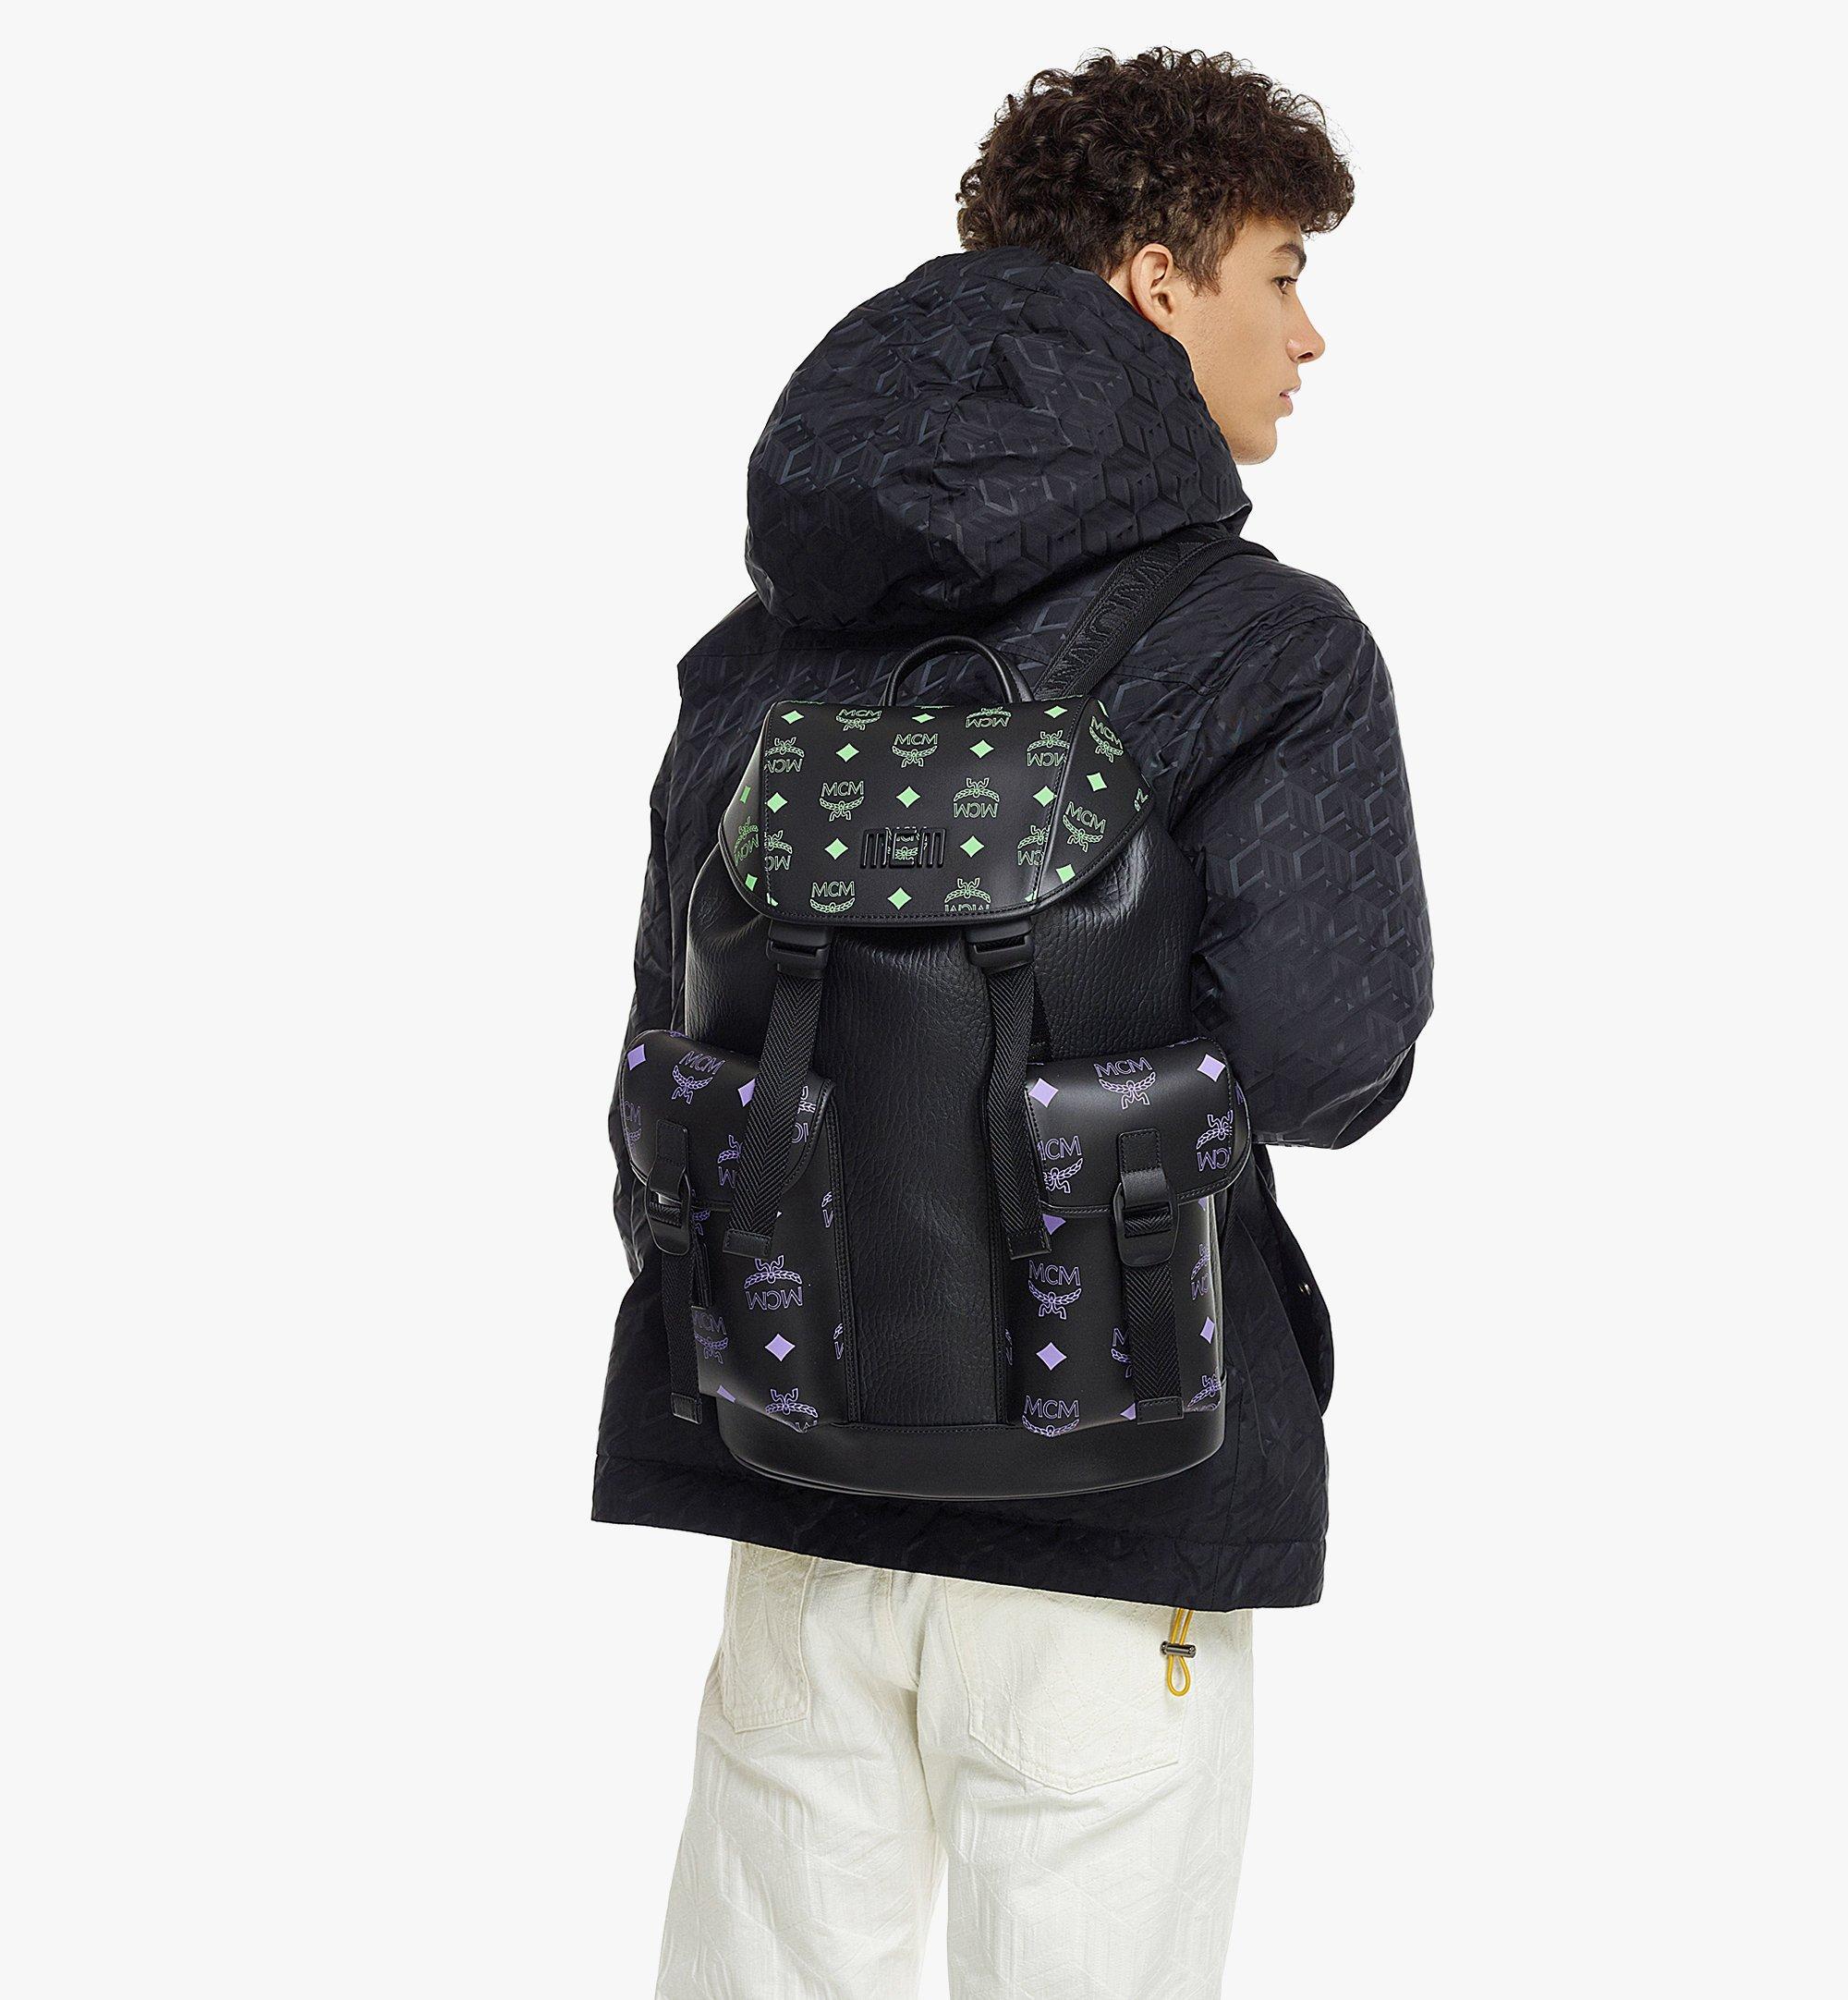 Mcm (Brandenburg Backpack in Color Splash Logo Leather) – Vip